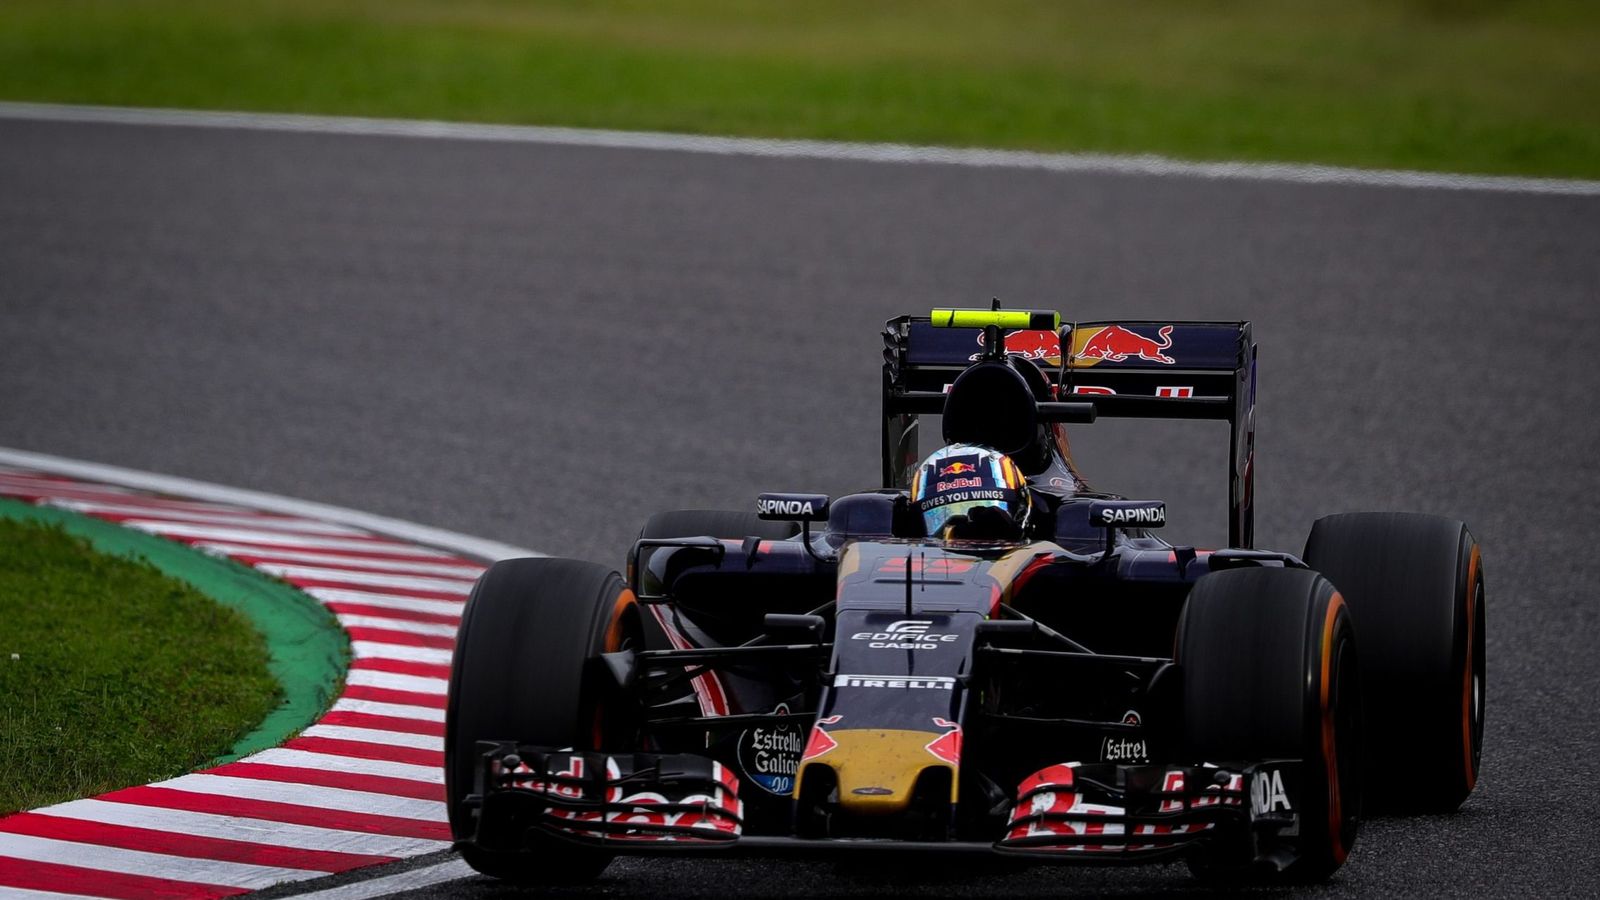 Foto: Carlos Sainz pilotando durante la última carrera, en Japón.